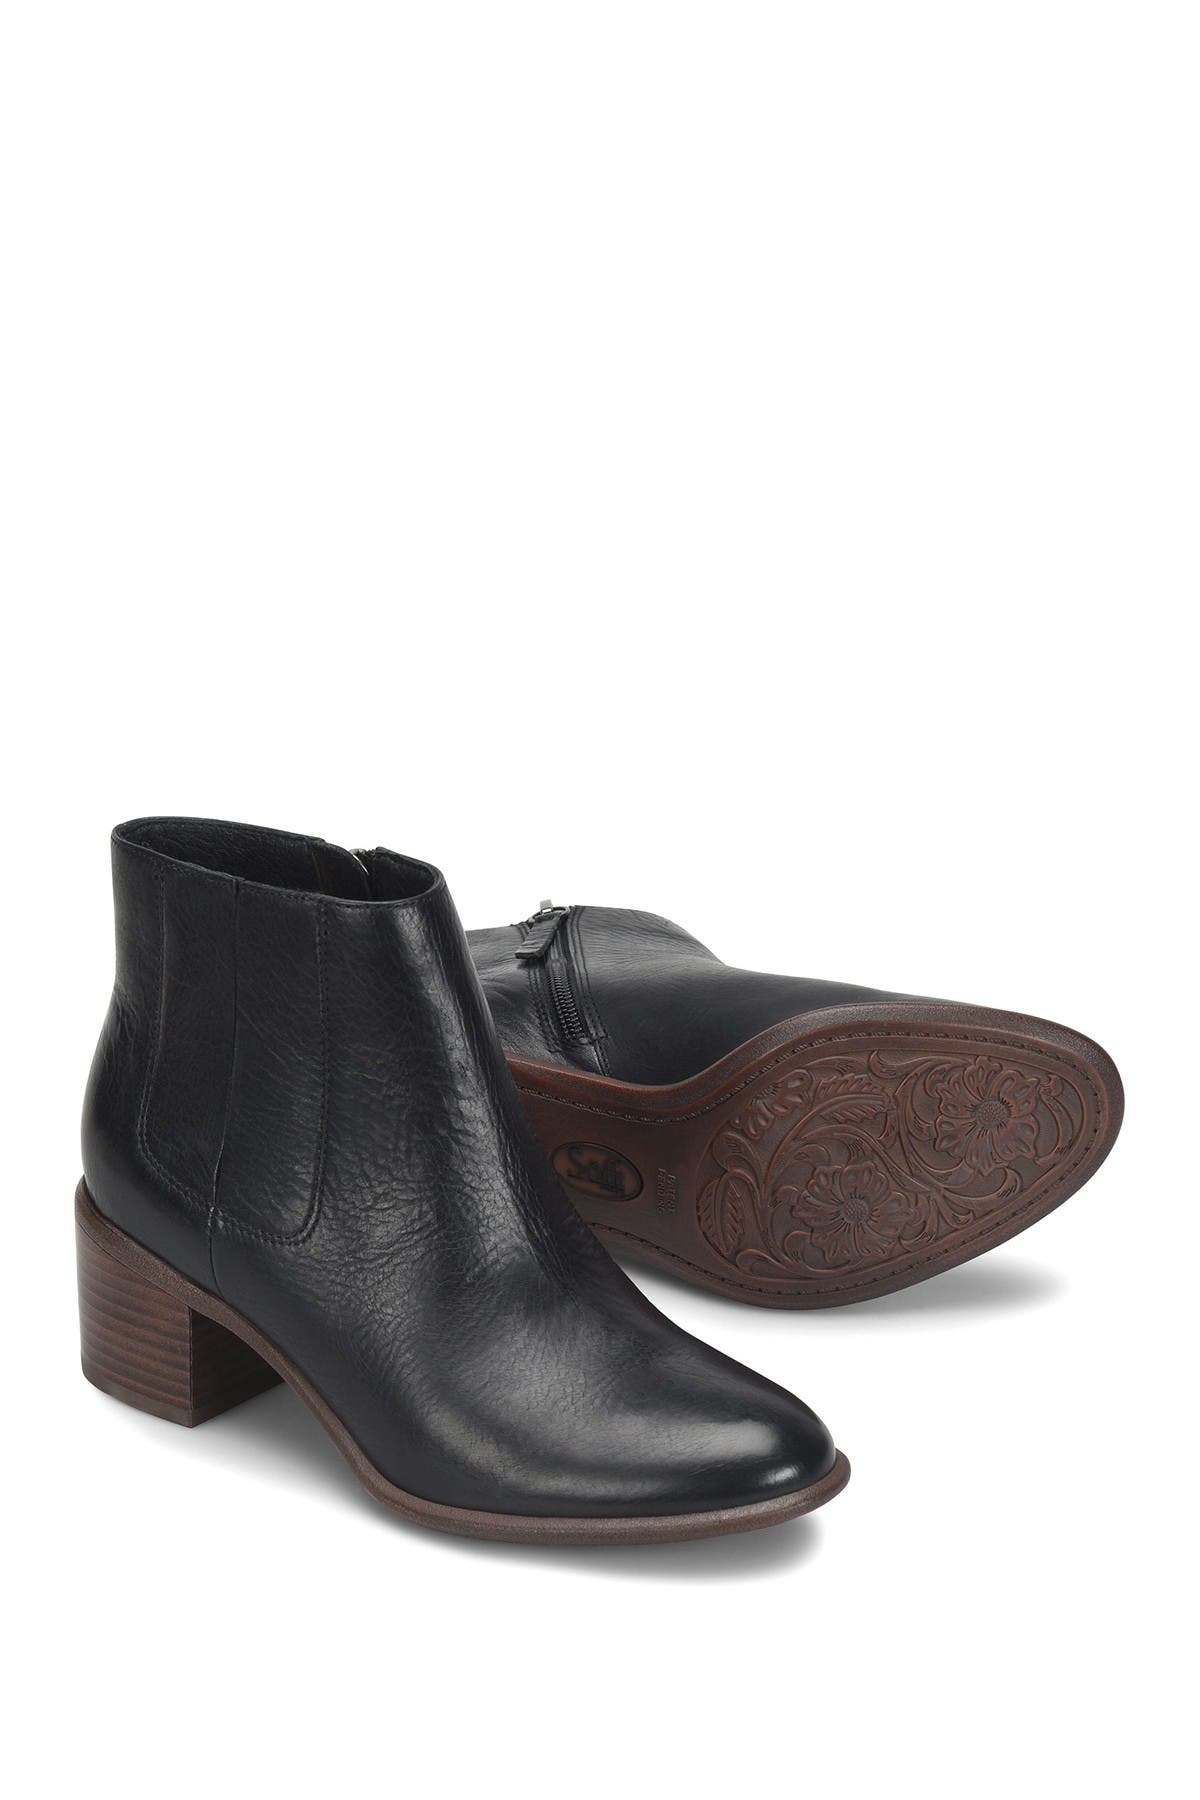 Sofft | Pueblo Leather Block Heel Boot 